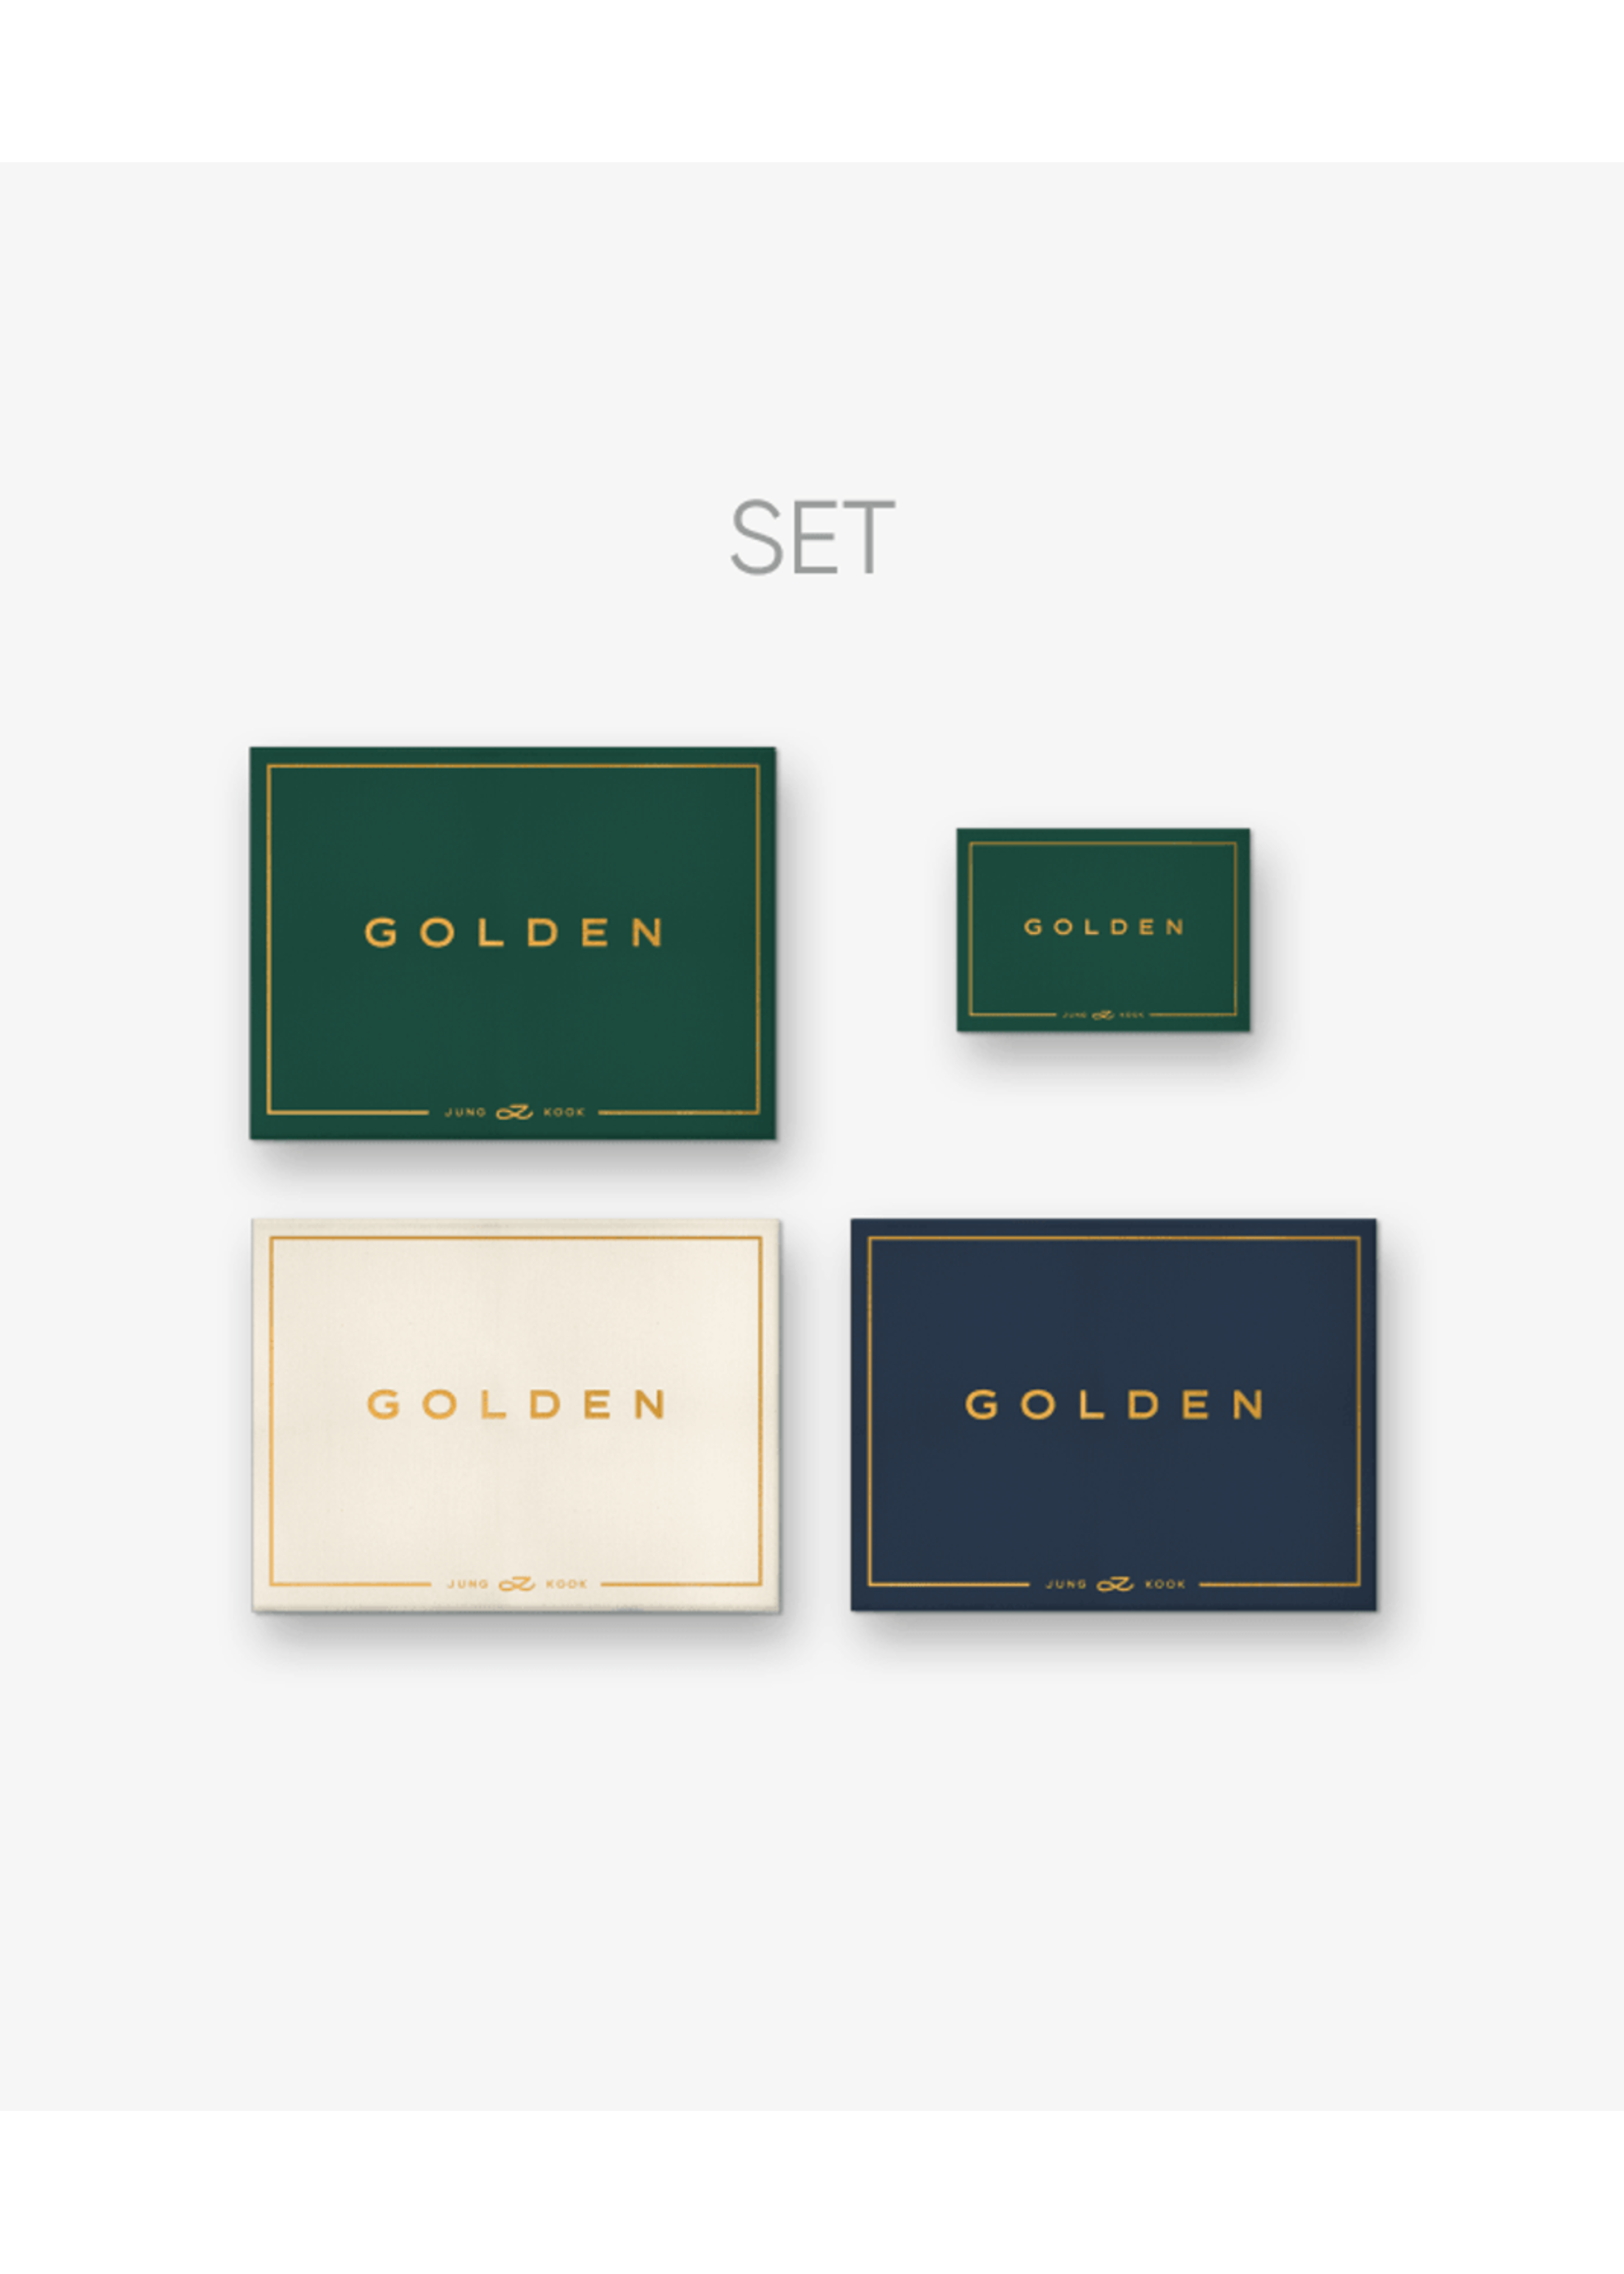 [Weverse] JUNGKOOK (BTS) - 'GOLDEN' (Set) + 'GOLDEN' (Weverse Albums ...